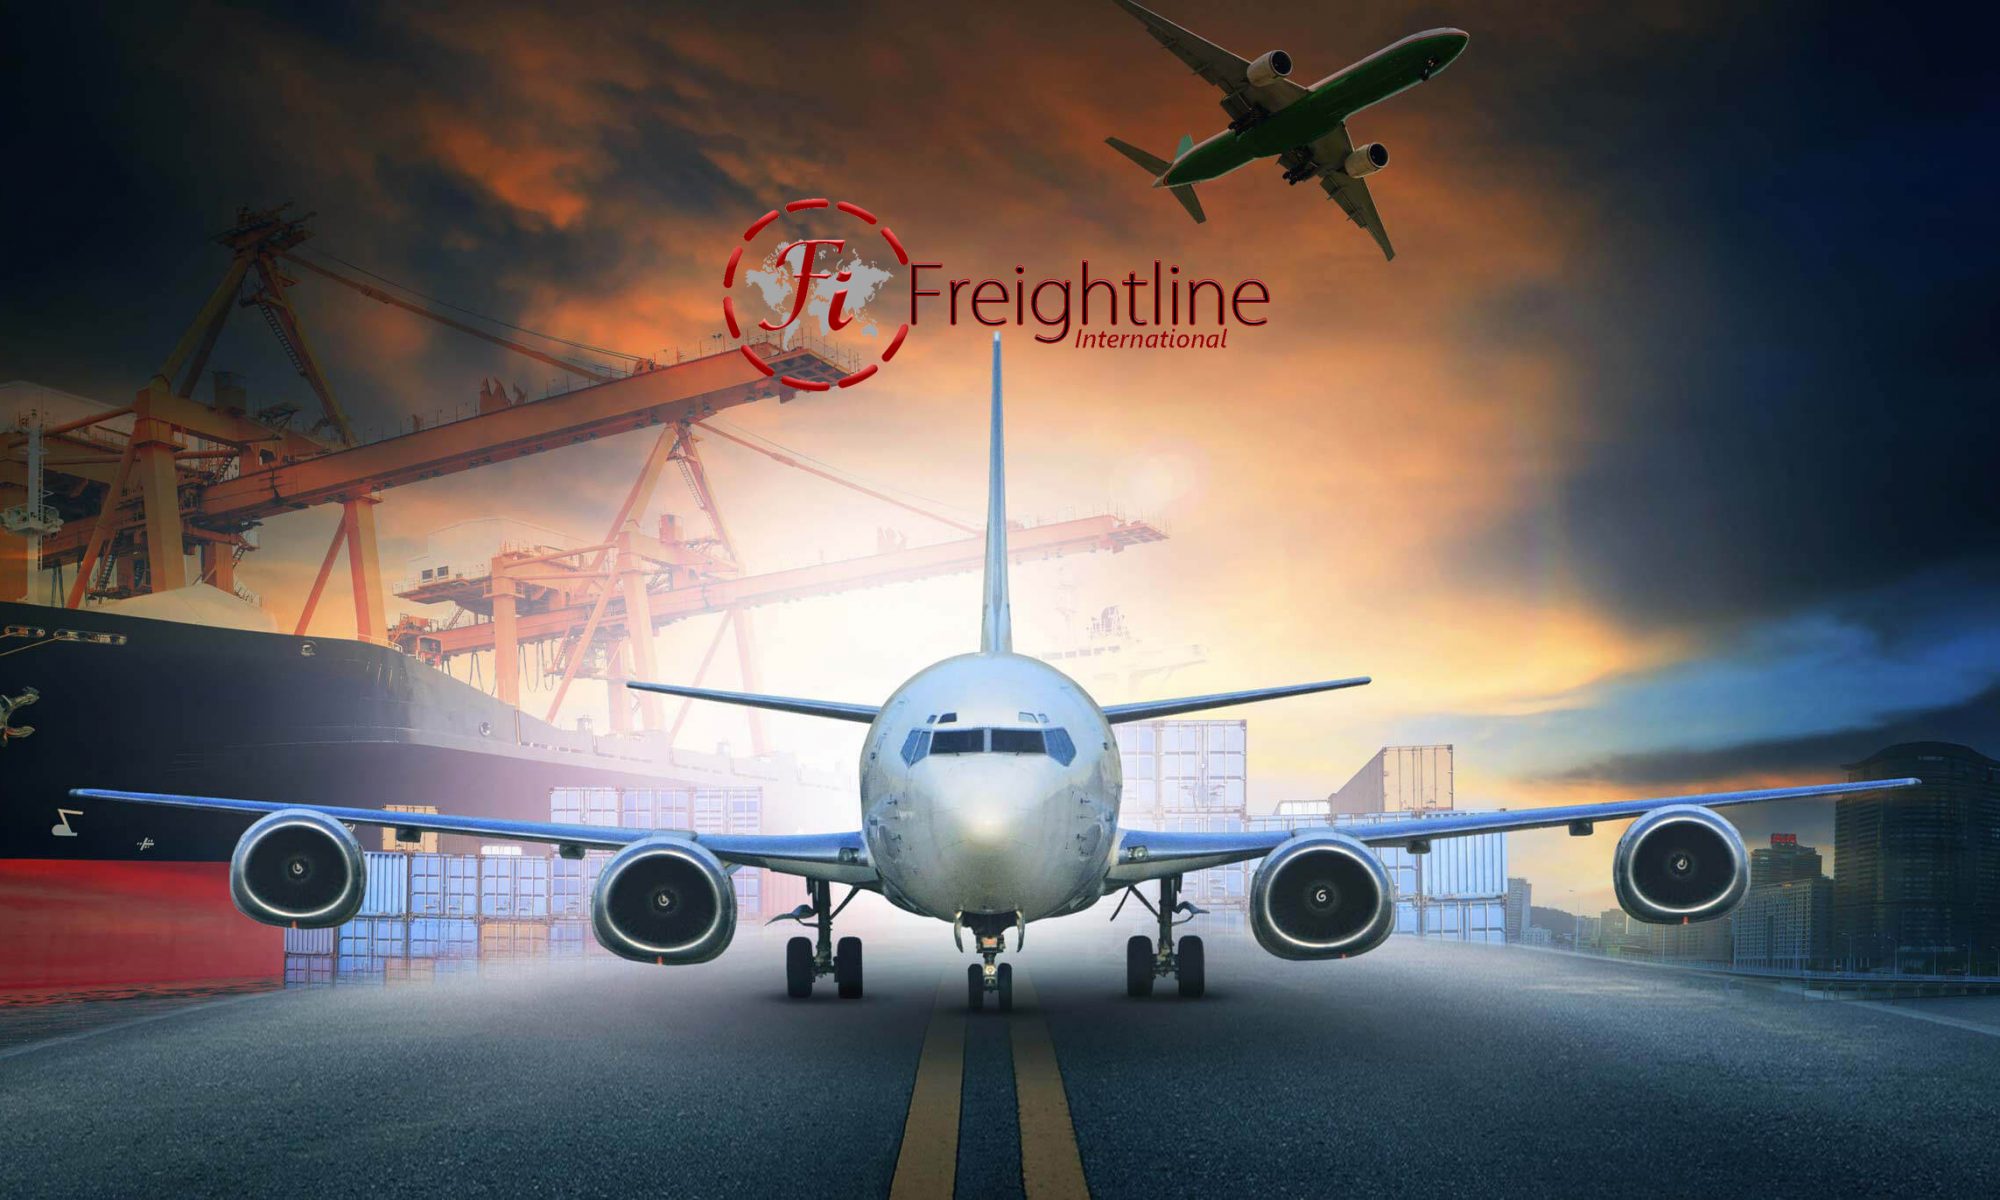 Freightline International Ltd